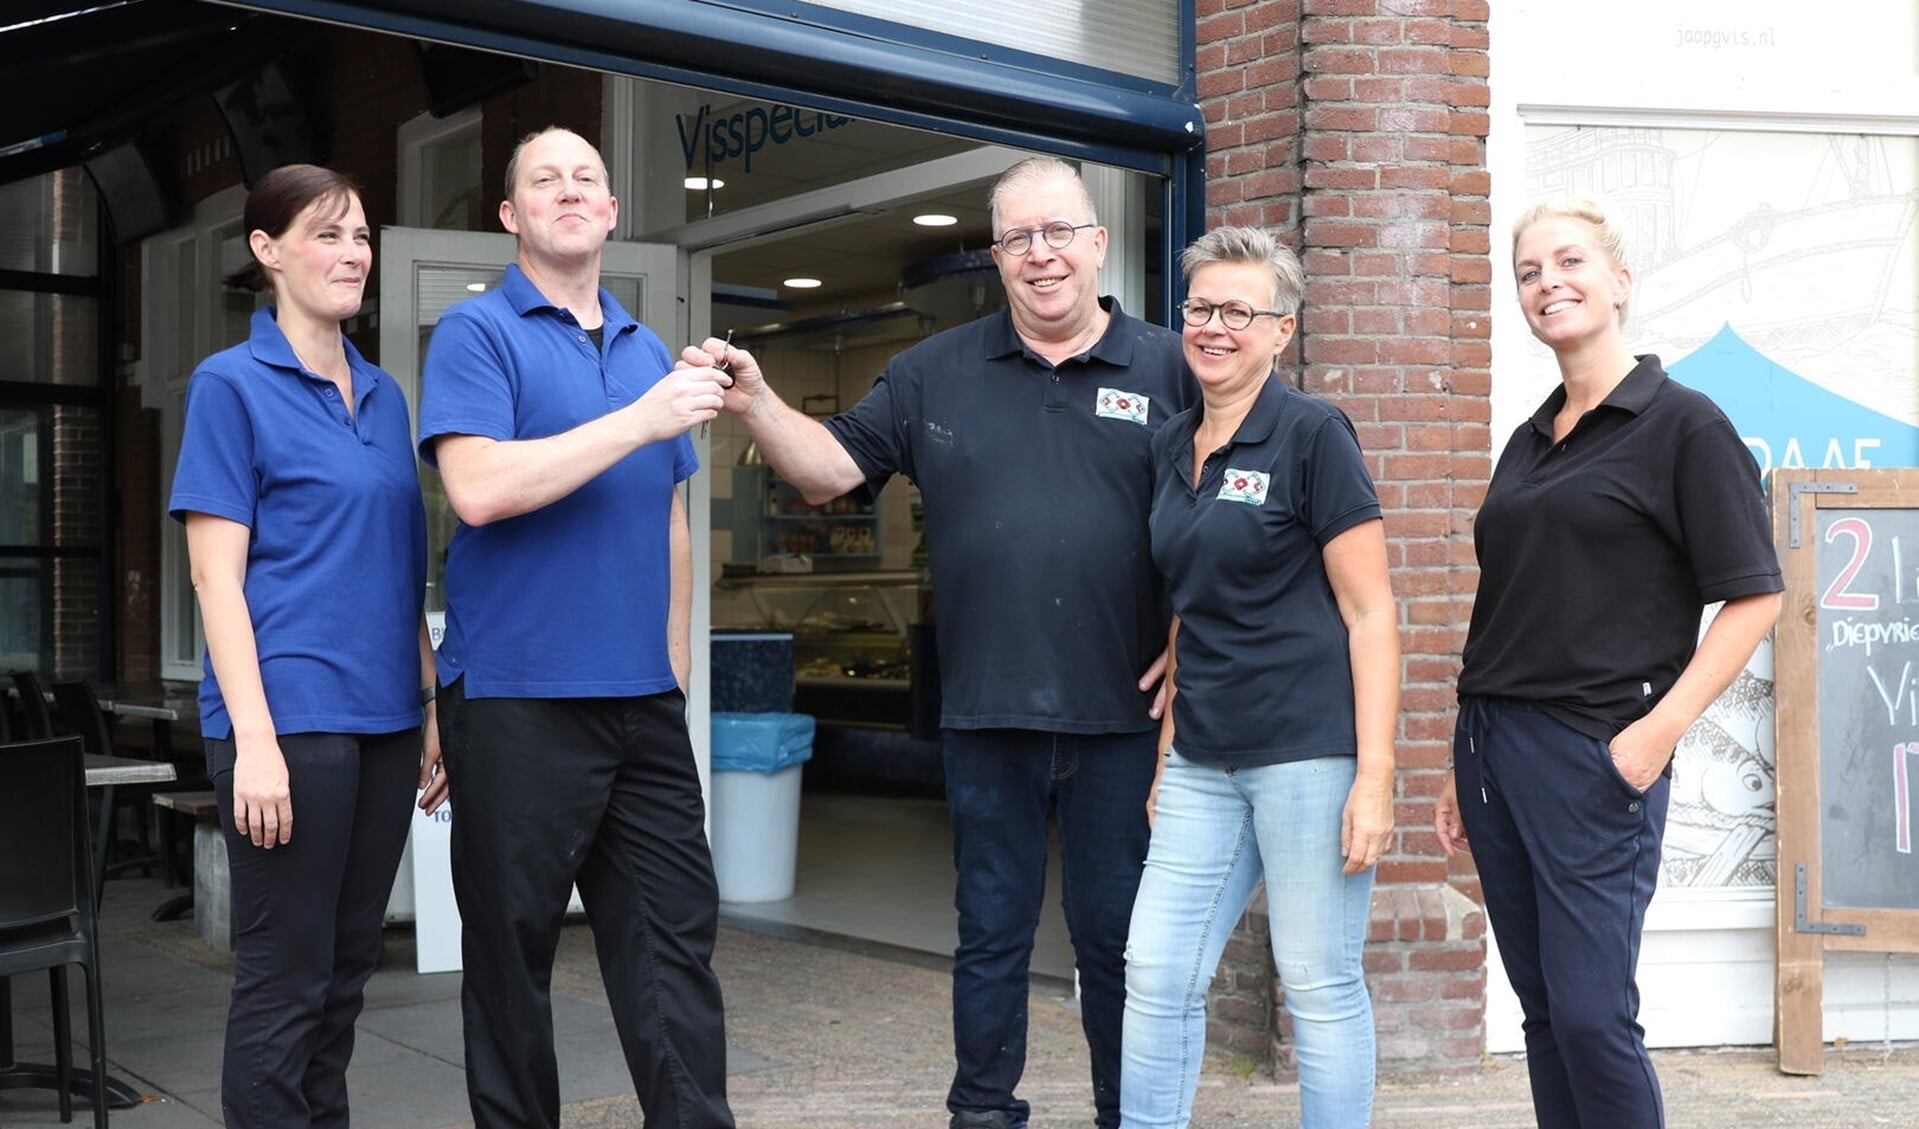 Jaap Graaf overhandigt de sleutel van zijn visspeciaalzaak aan de nieuwe eigenaar Cor van der Veer. Links Cors partner Nicole van der Heiden, rechts van Jaap zijn vrouw Connie en dochter Stacey.